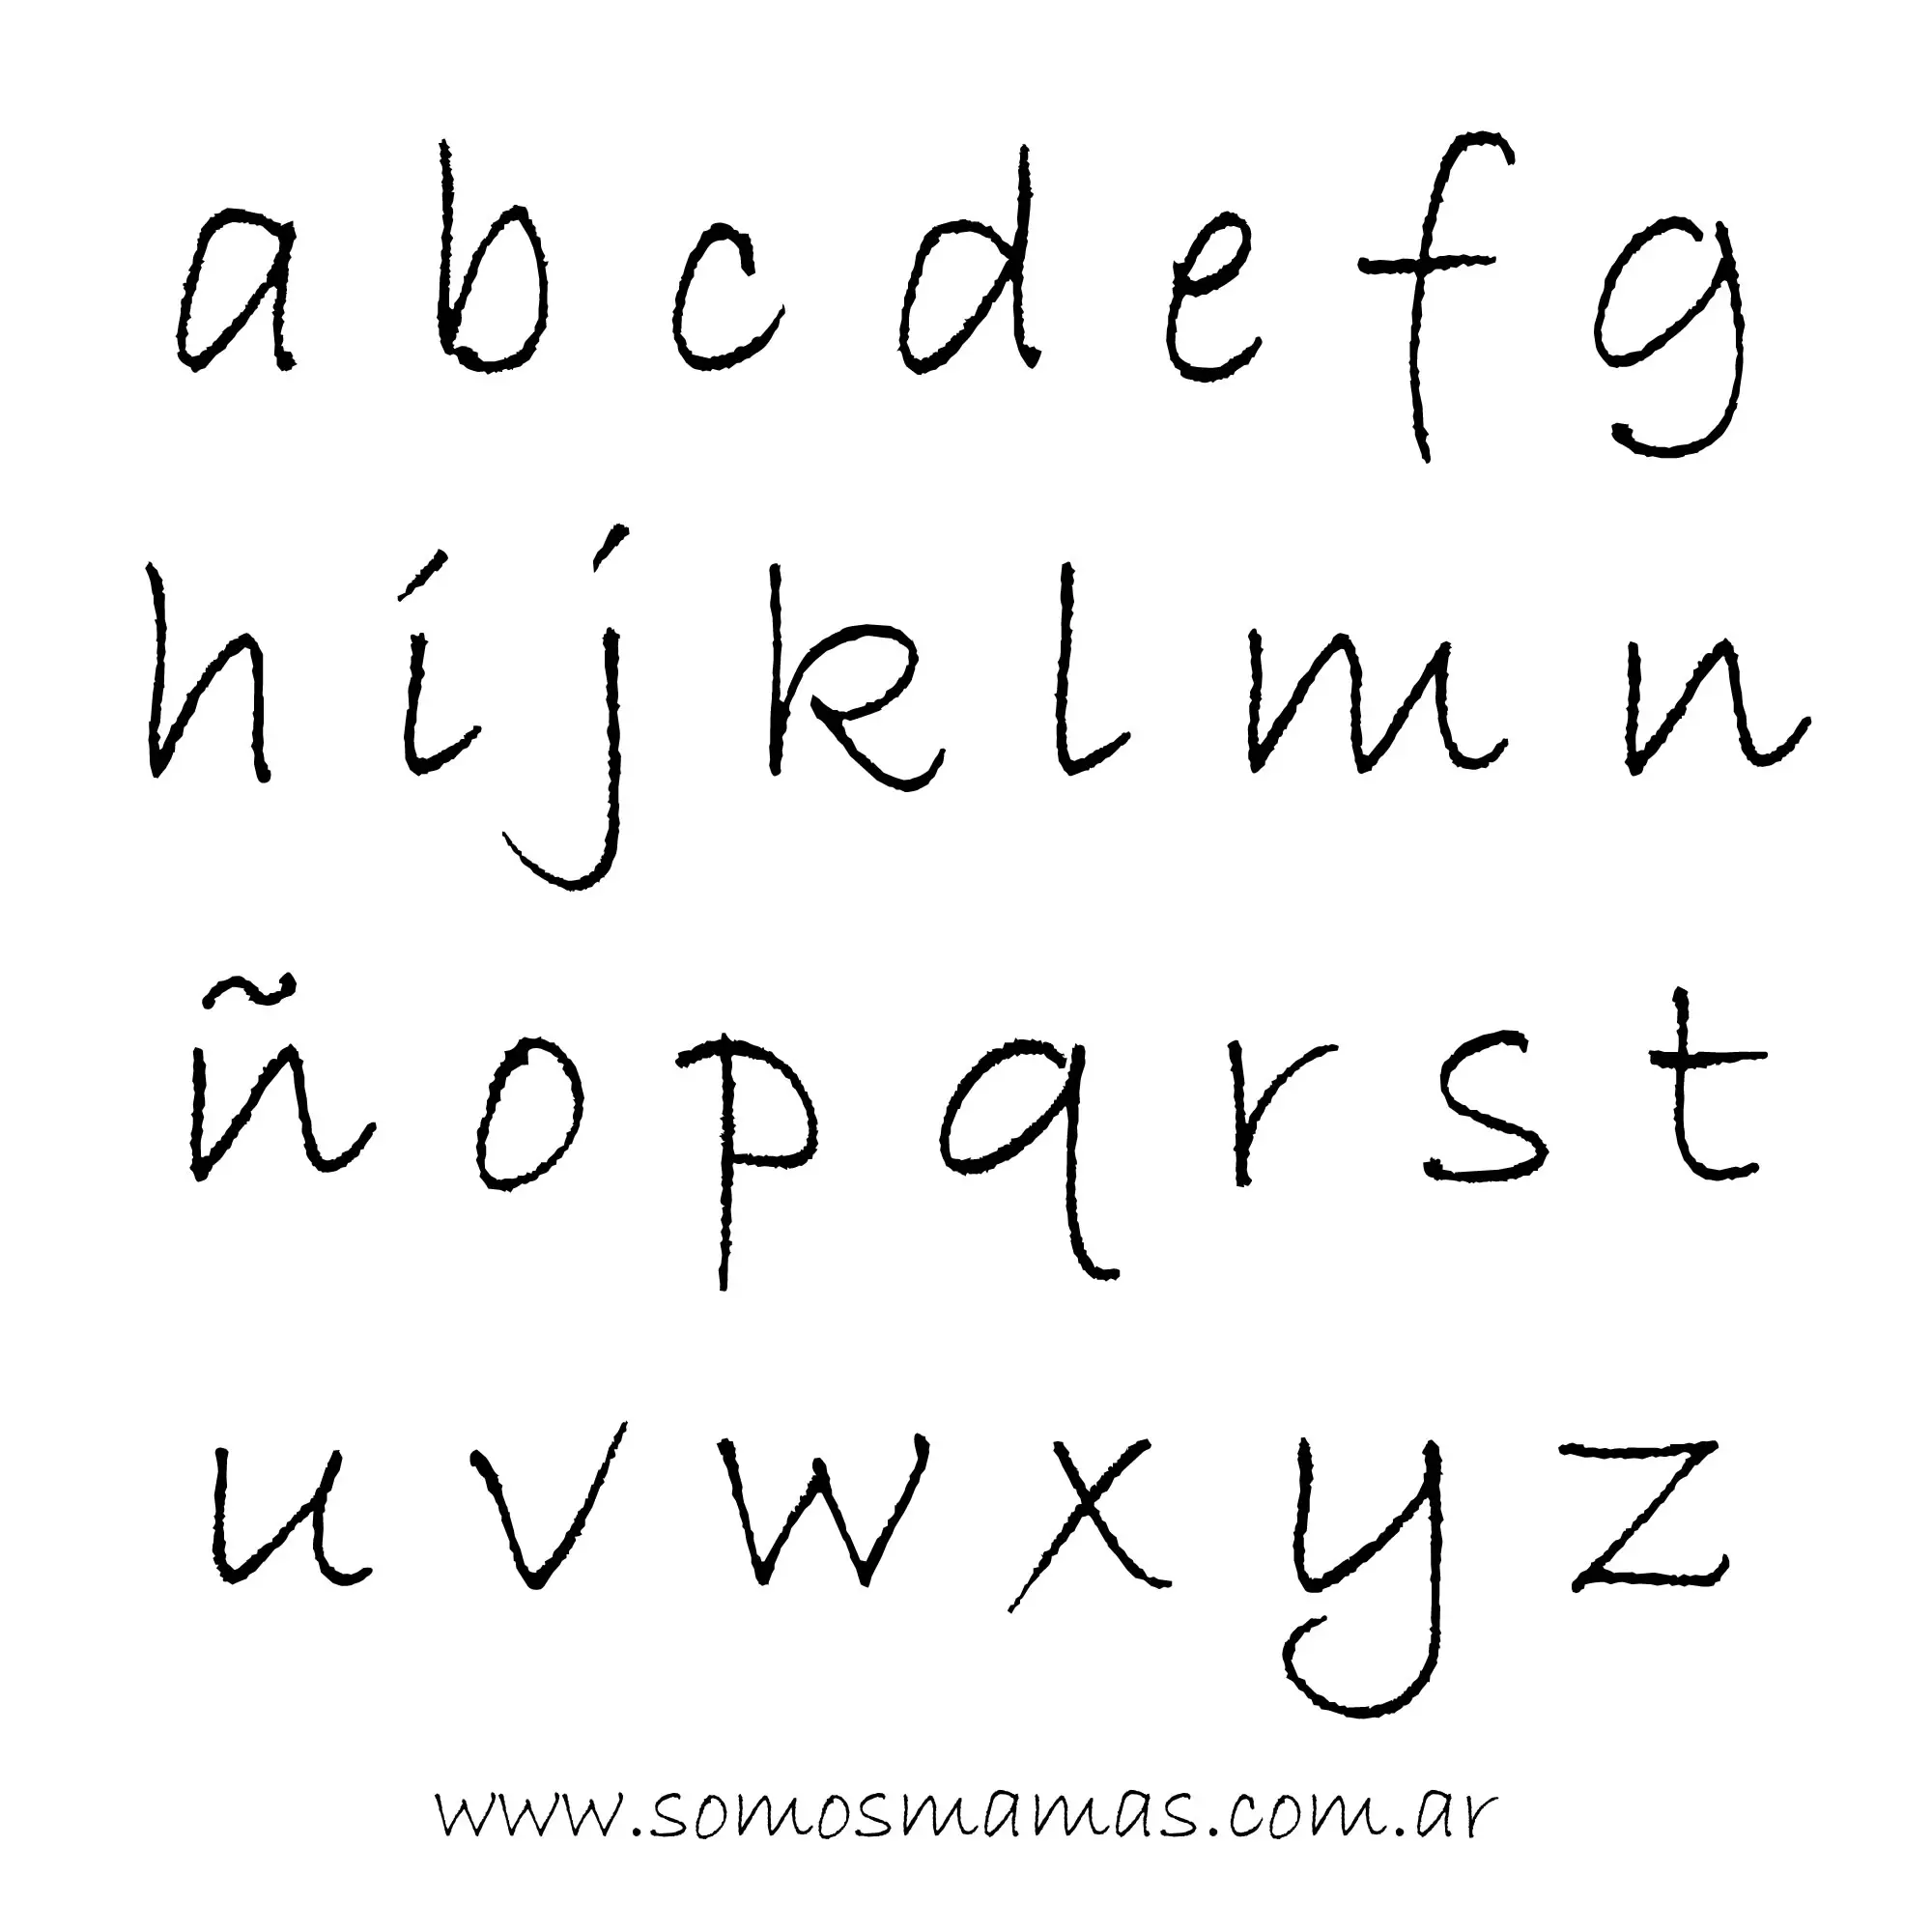 Letras del abecedario en cursiva y minúsculas también son conocidos como abecedario Grafitti